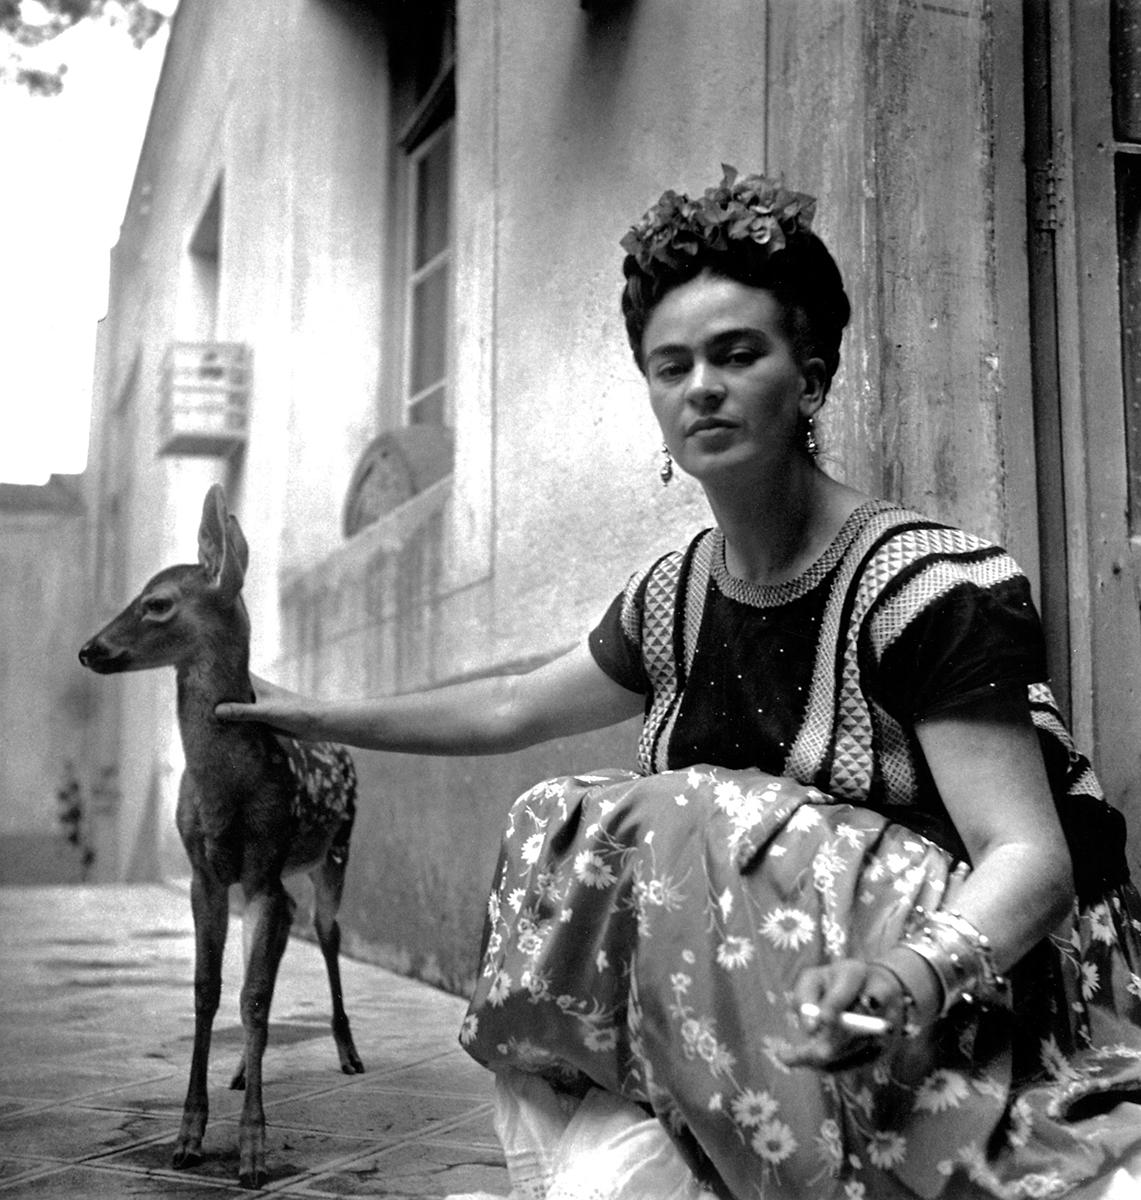 Frida with Granizo de Nickolas Muray est un portrait en noir et blanc de la peintre surréaliste mexicaine Frida Kahlo avec son animal de compagnie, Granizo. 

Tirage platine
Taille de l'image : 11 x 10.5 in.
Format du papier : 20 x 16 in.
Edition